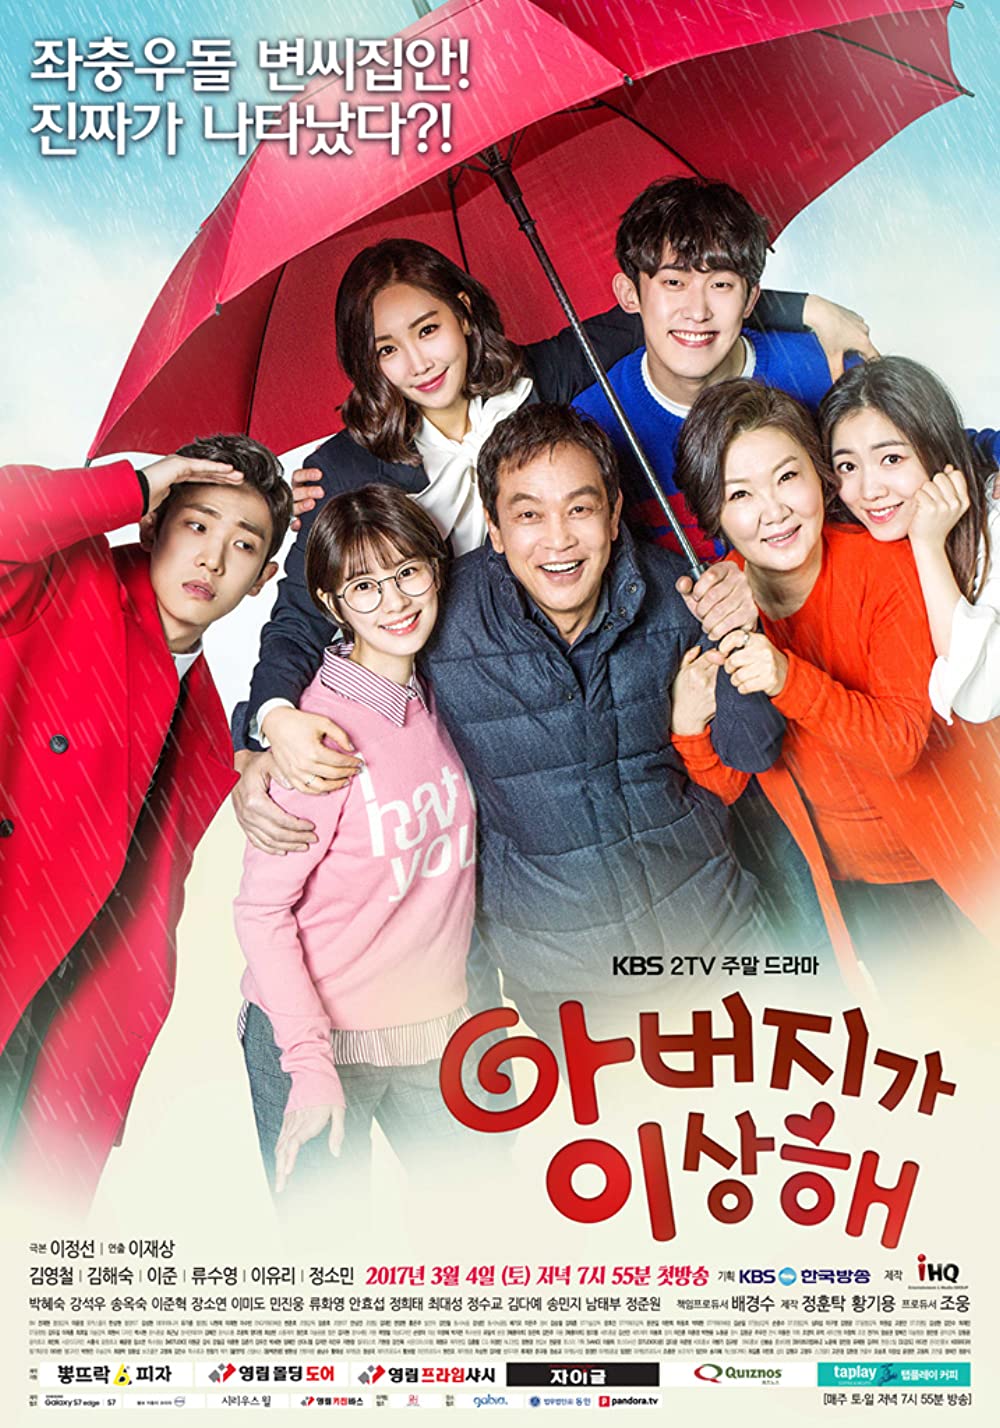 Sambut tahun baru, ini 9 drama Korea bertema keluarga terbaik di IMDb